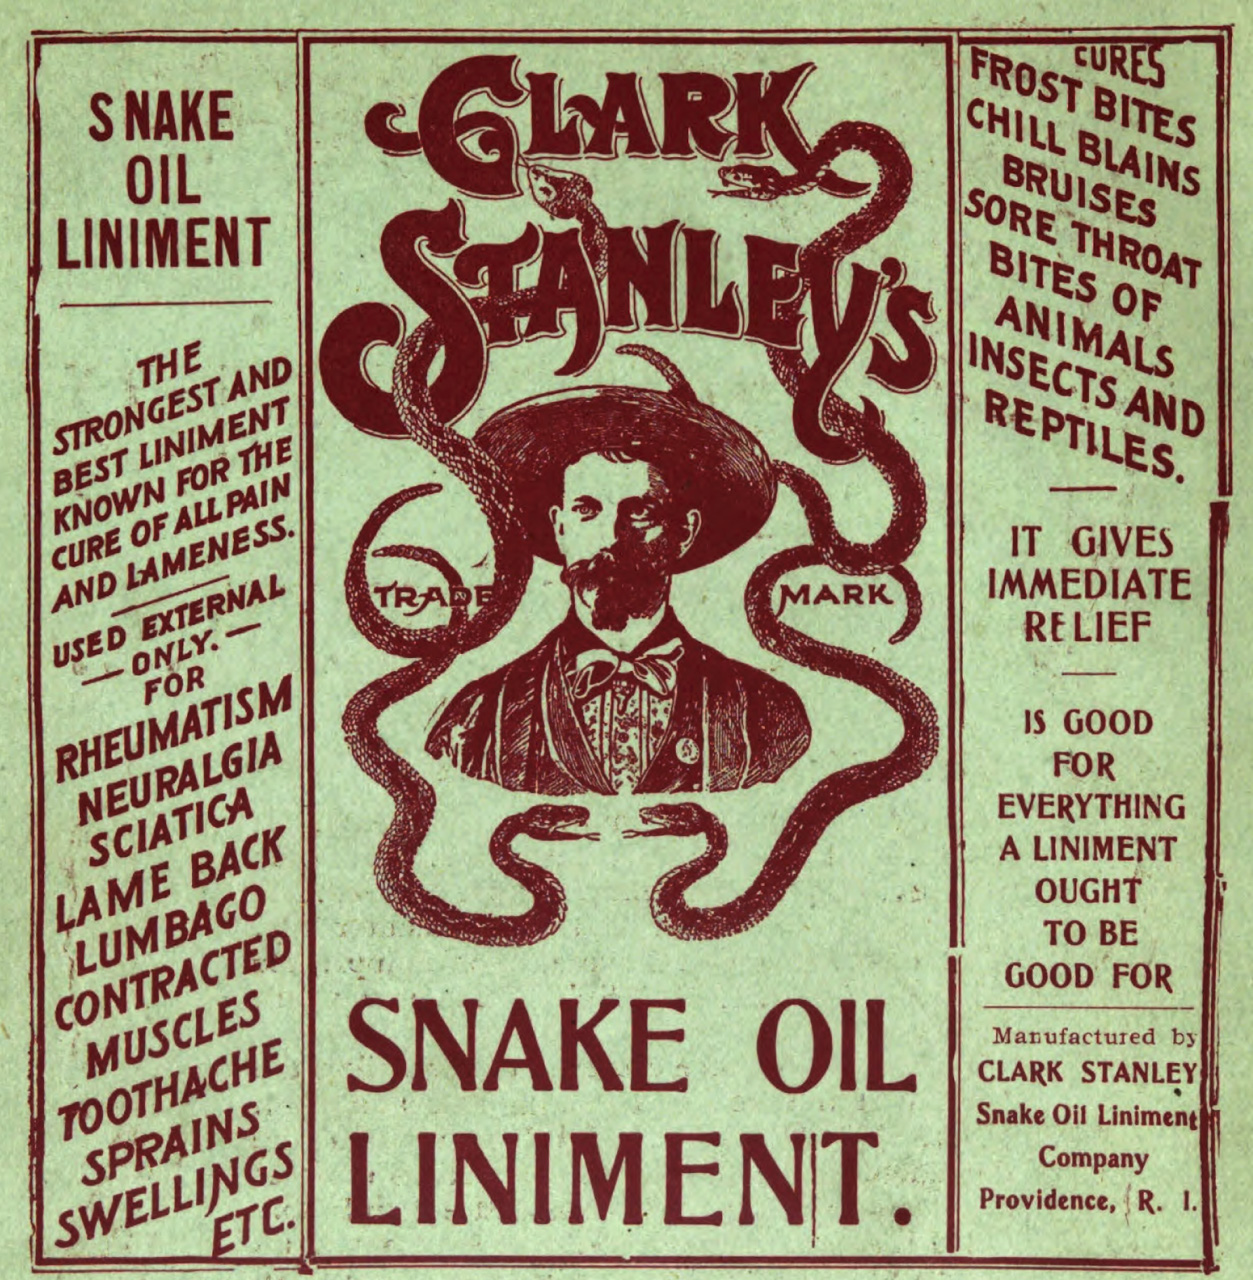 Clark Stanley's Snake Oil Liniment